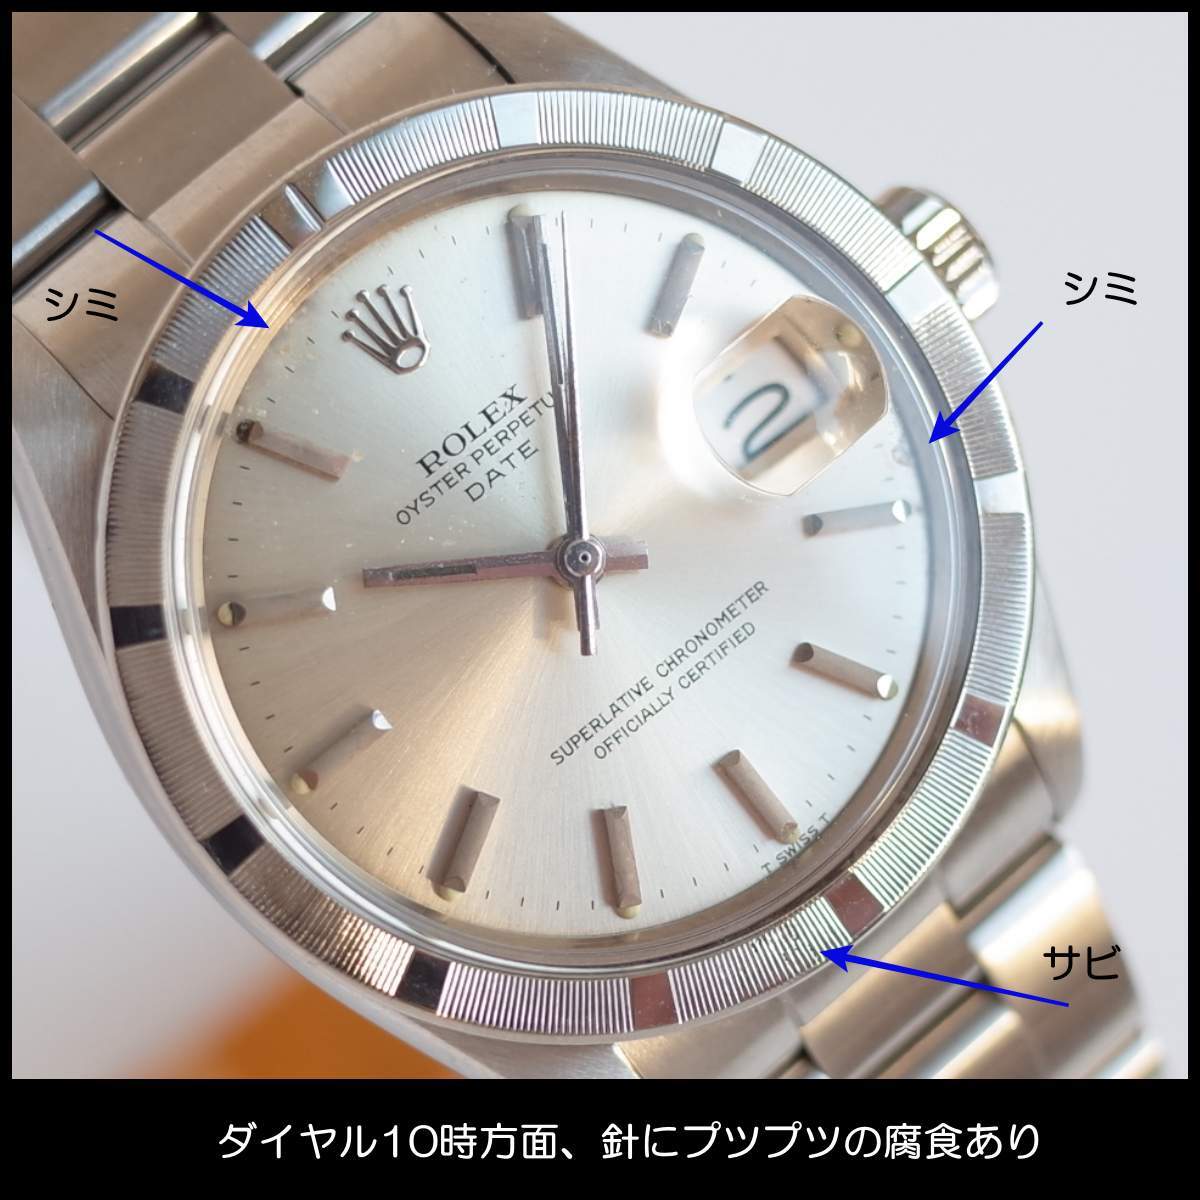 箱/保証書 ロレックス 1501 1971年 パーペチュアルデイト SS ファインリーエンジンターンドベゼル メンズ 腕時計 OH済 ROLEX 1年保証_画像3